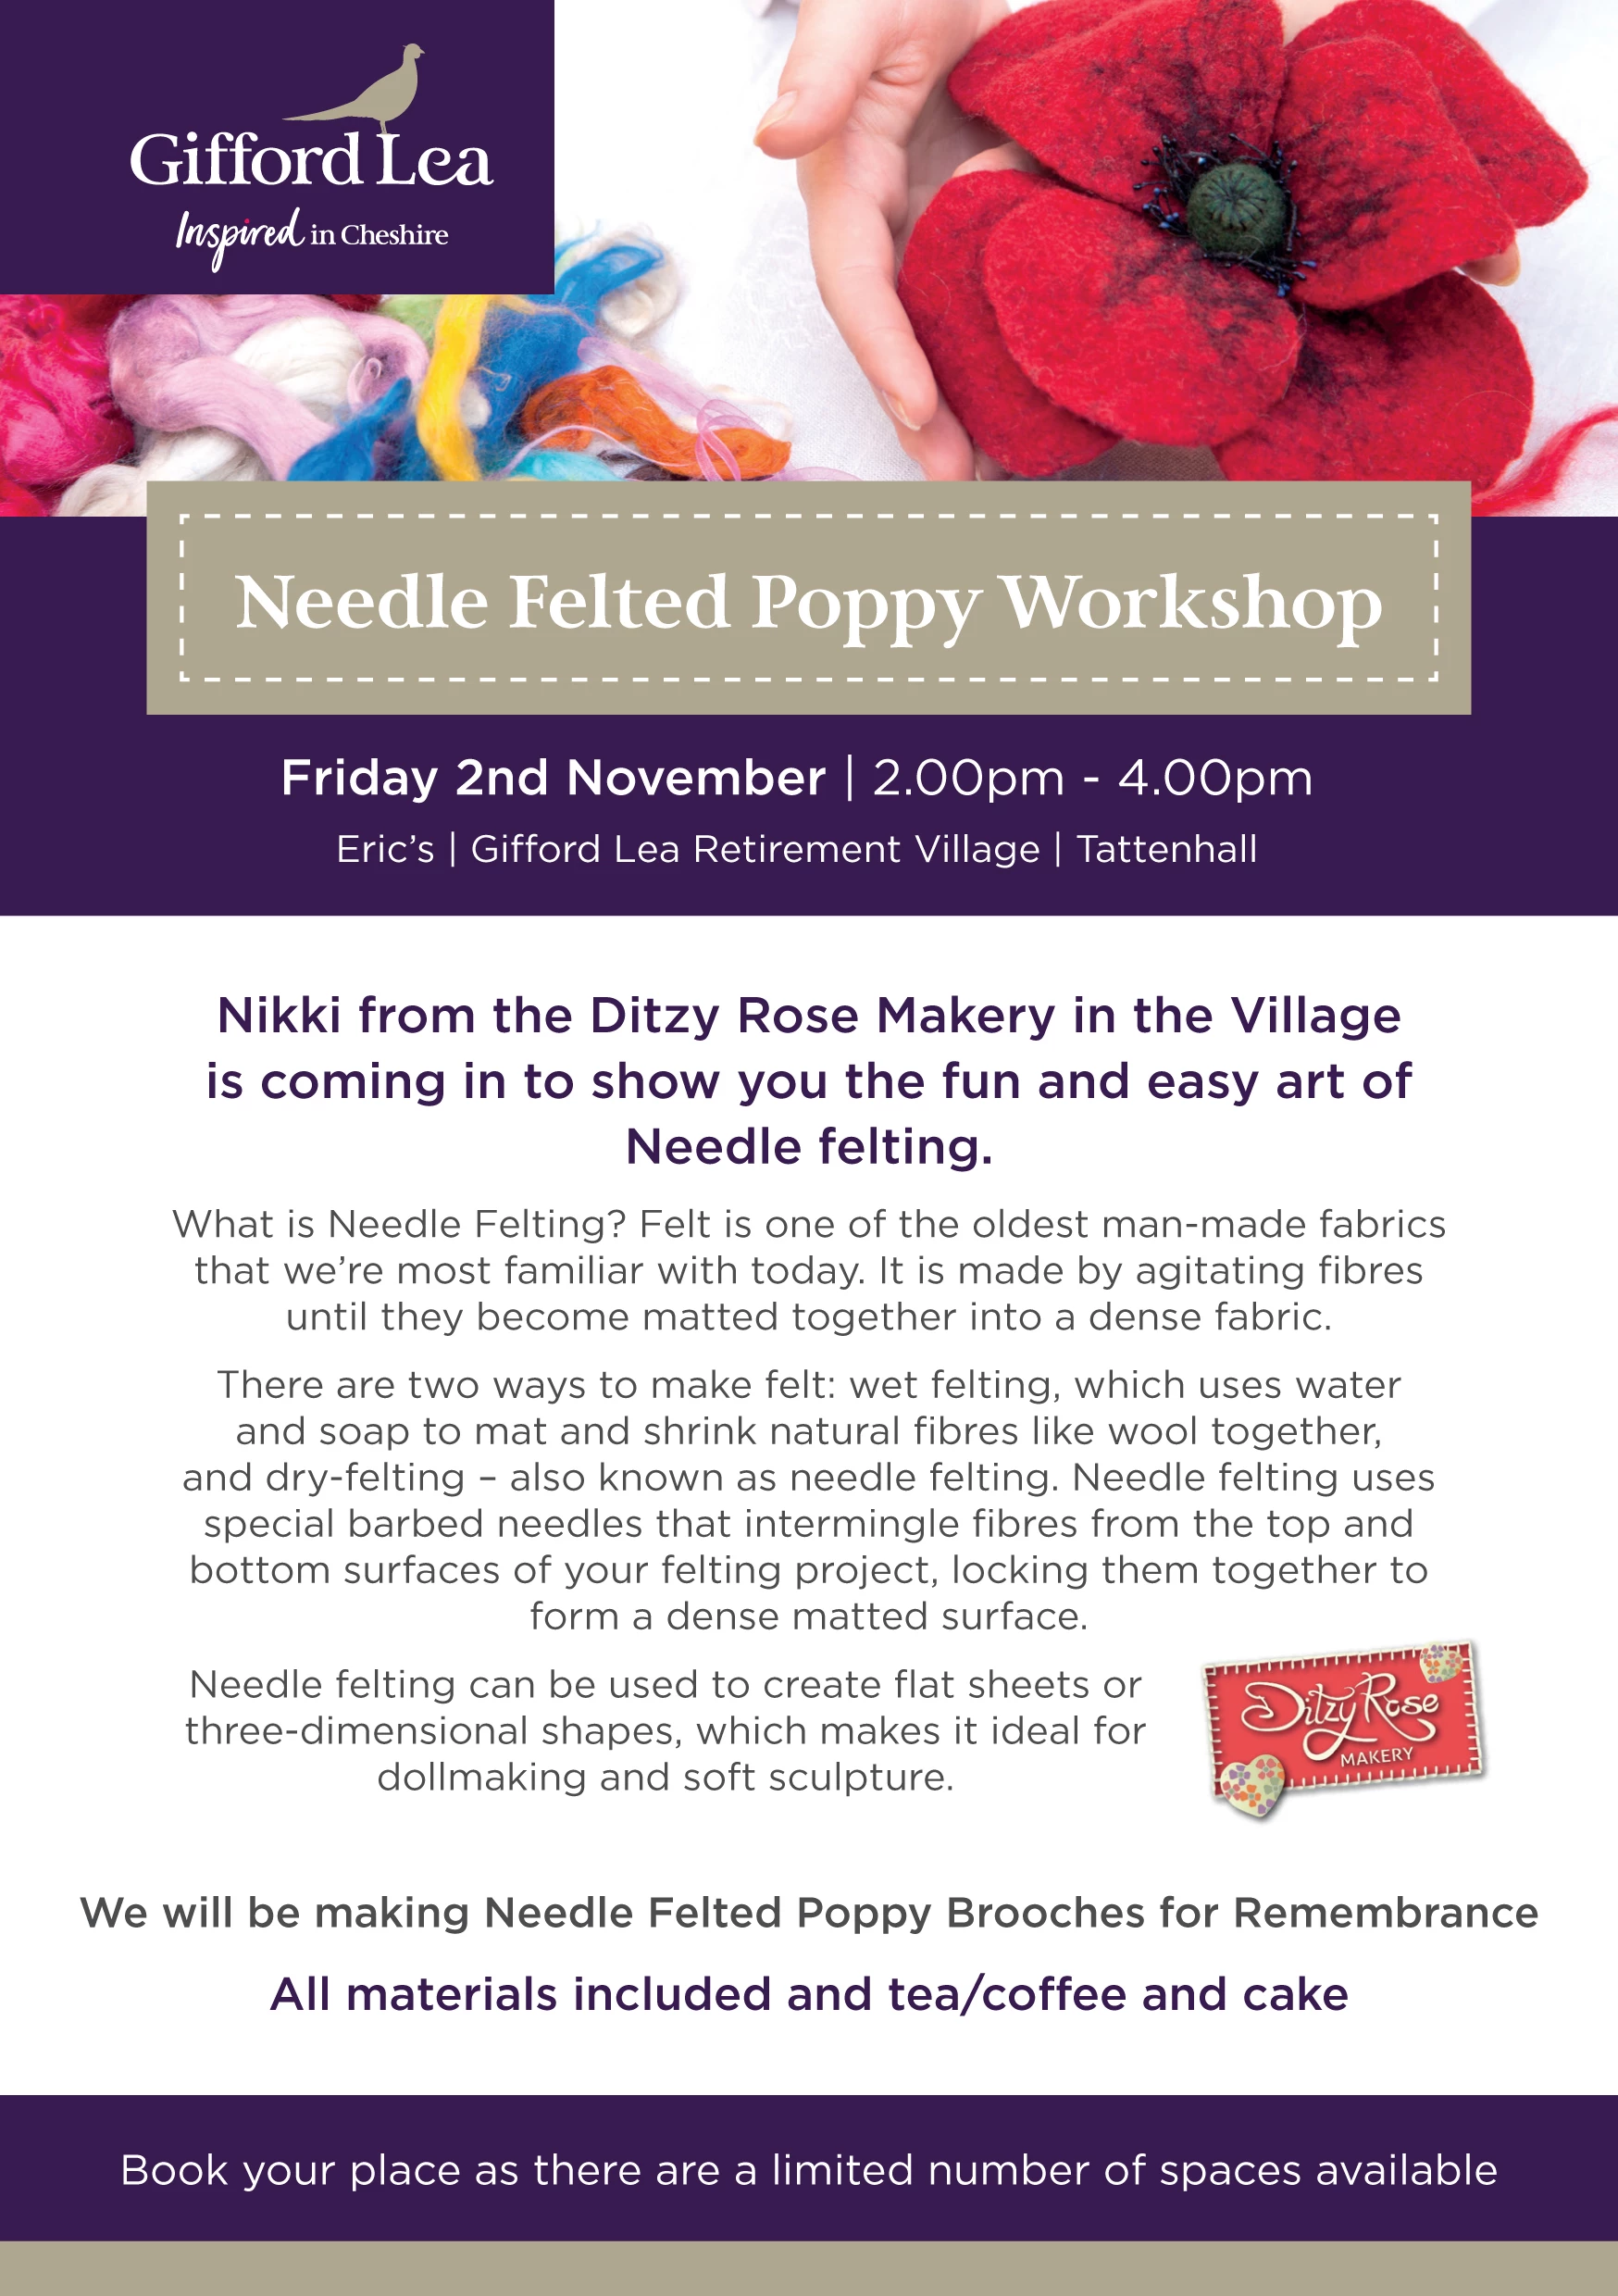 gifford lea poppy workshop flyer1